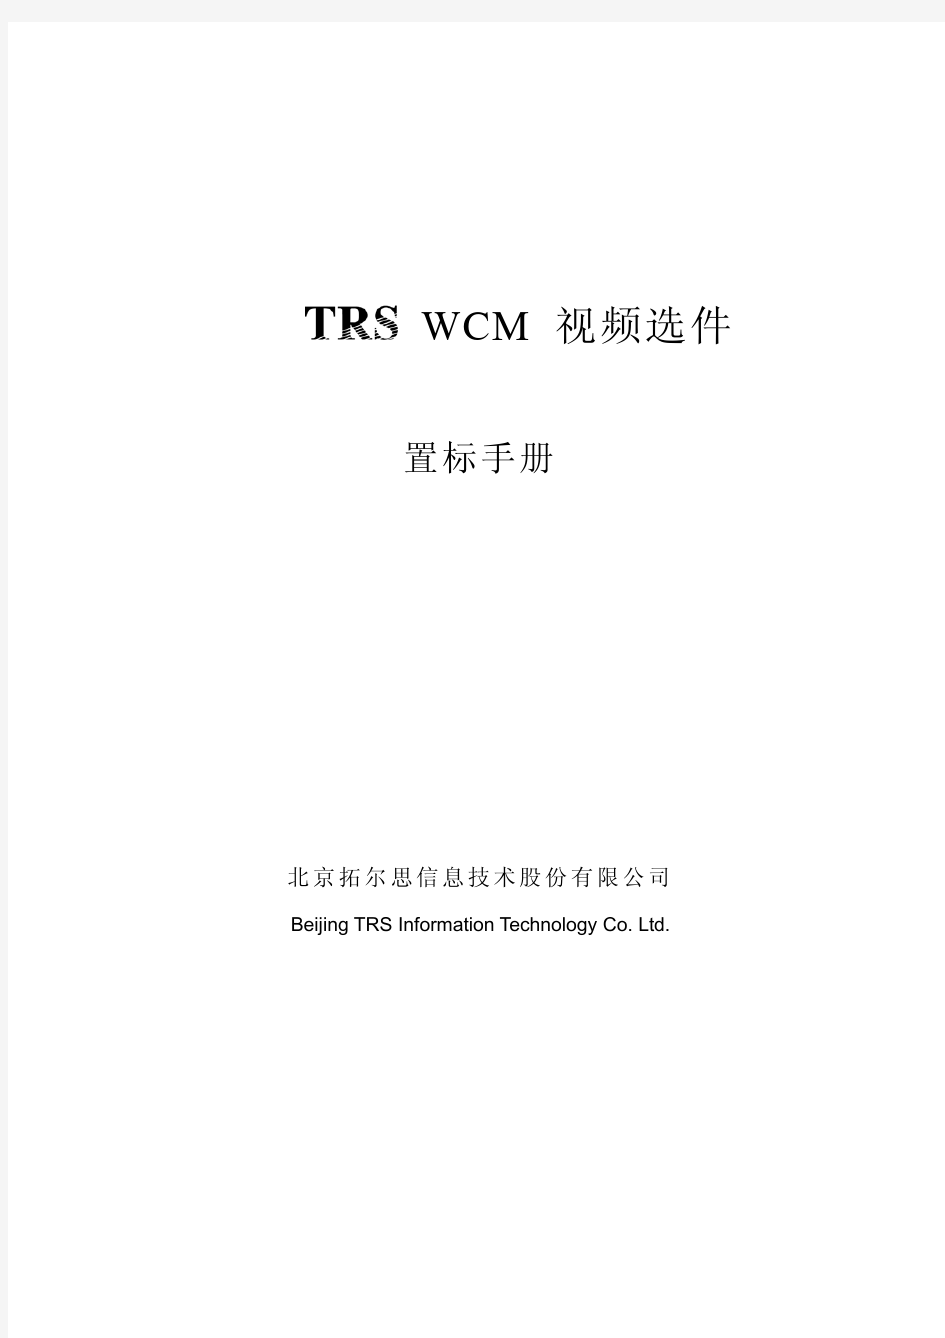 TRSWCM视频选件置标手册